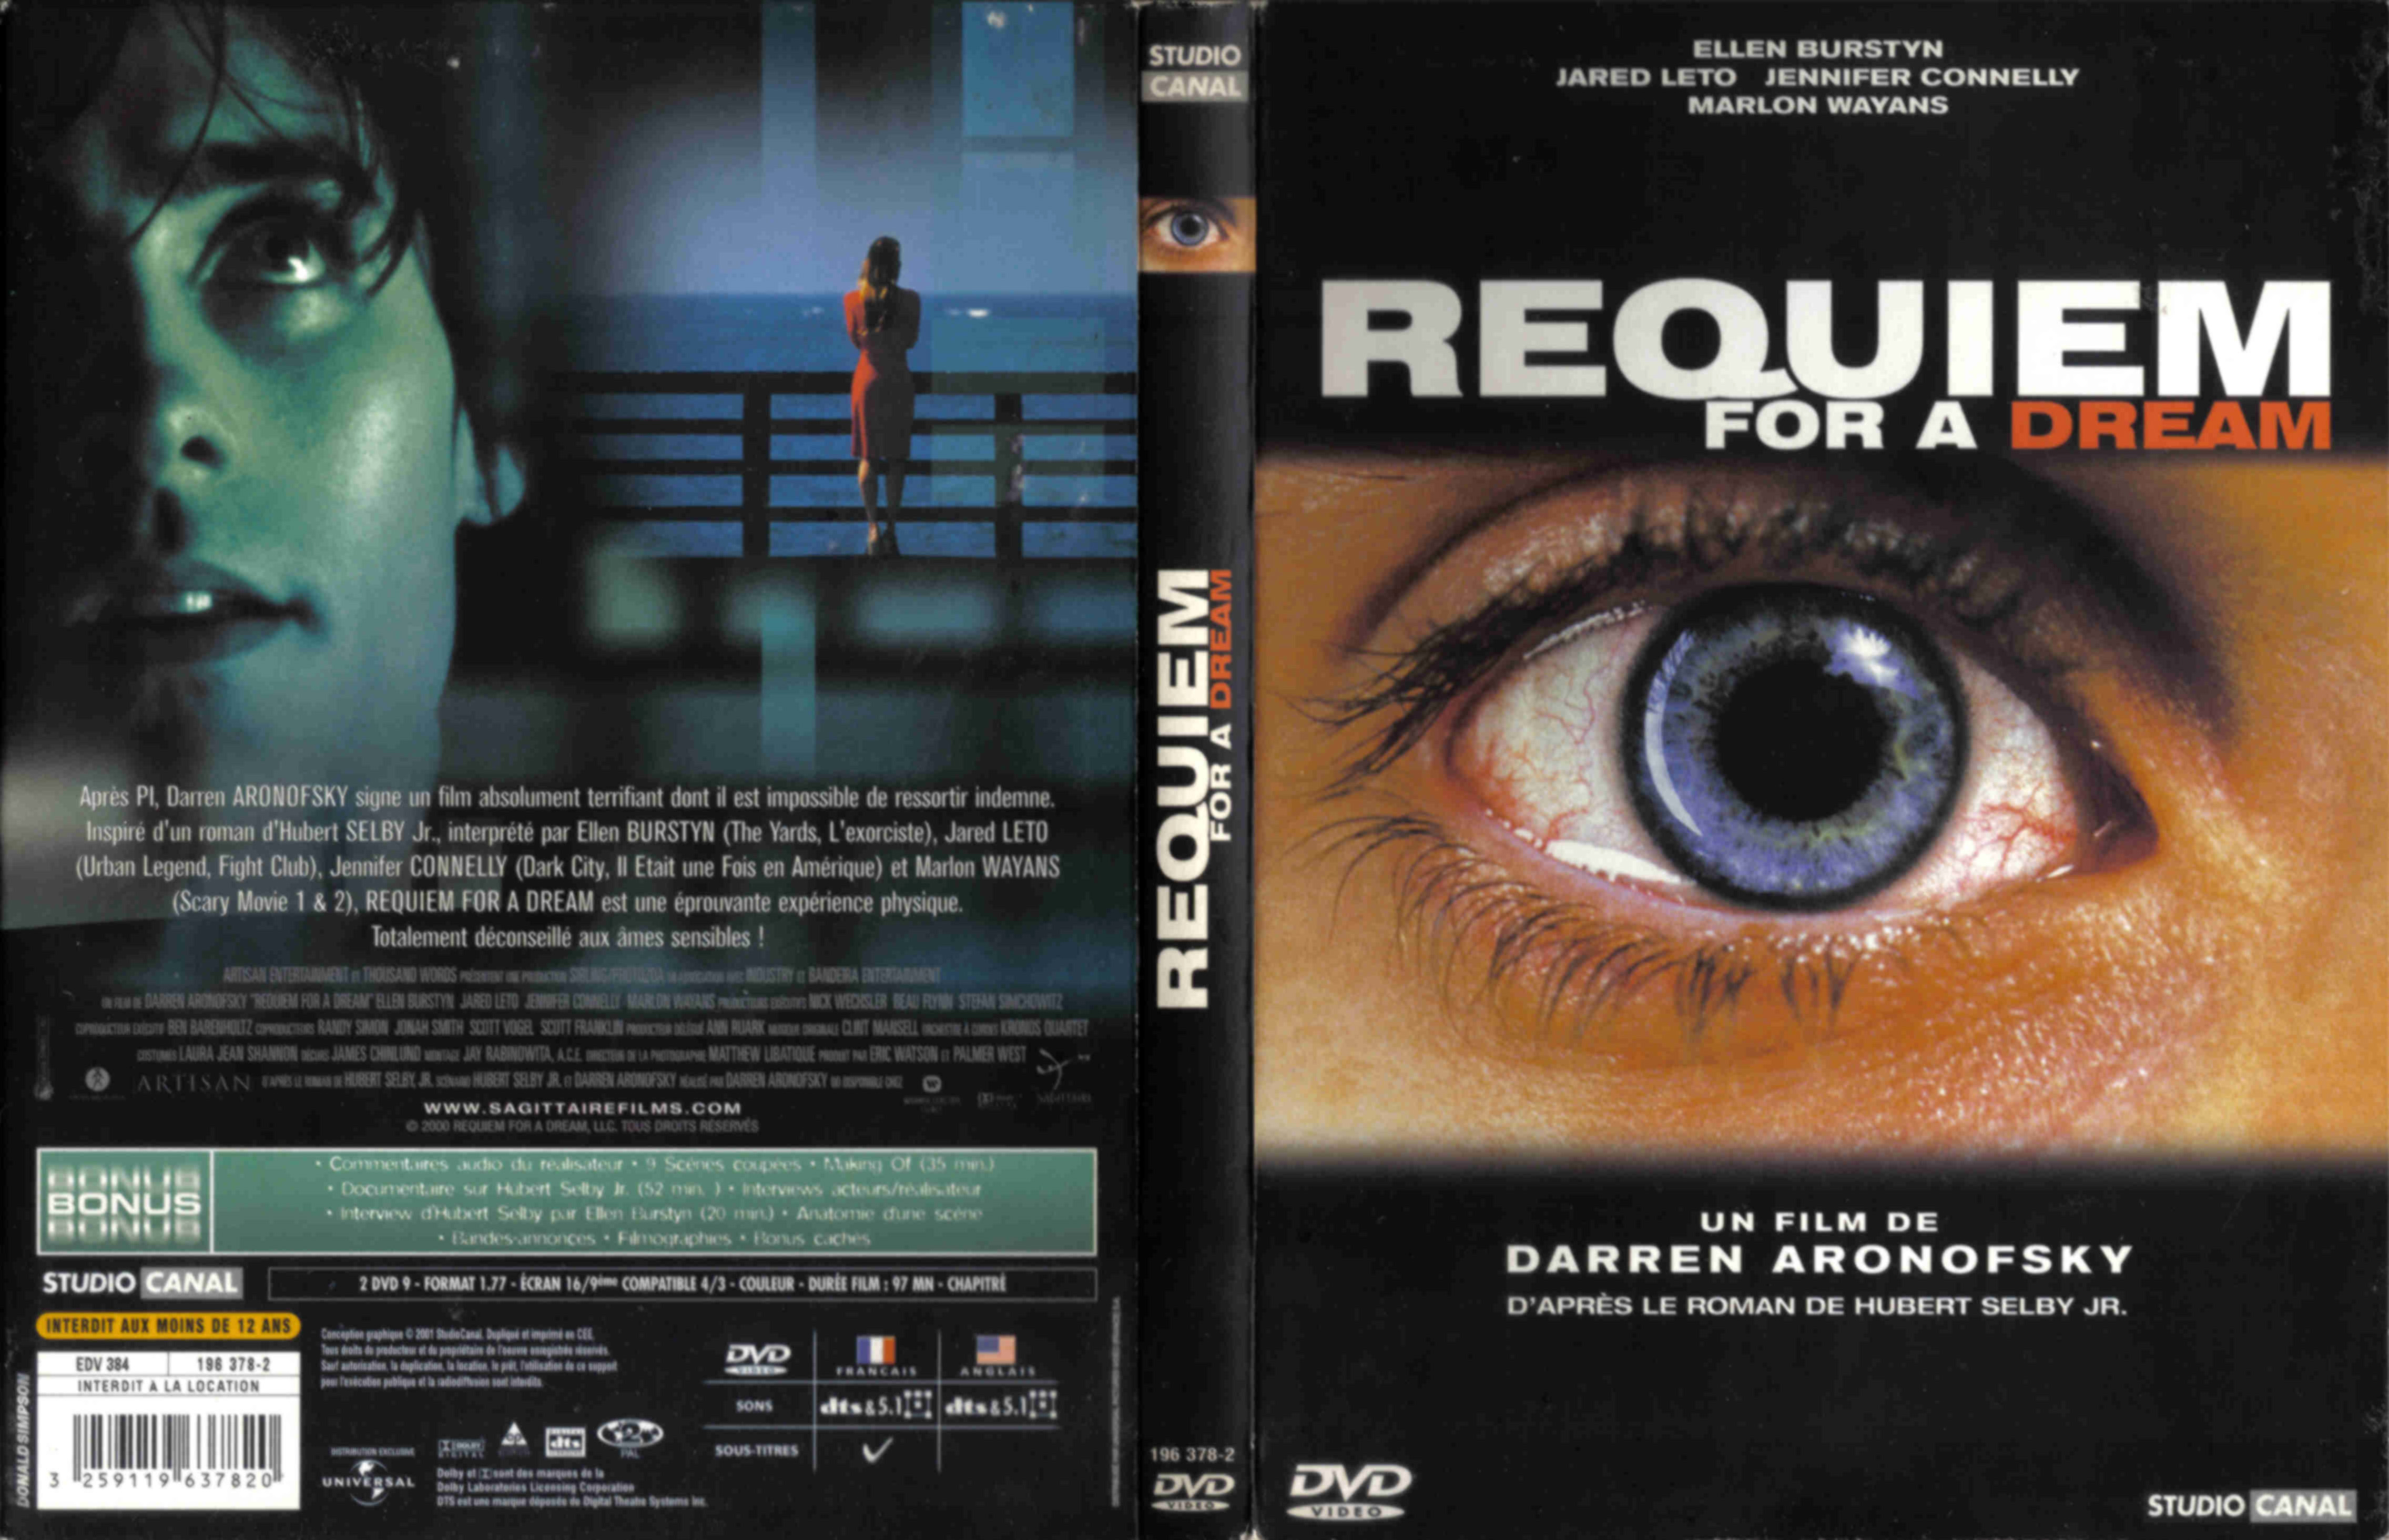 Jaquette DVD Requiem for a dream v3